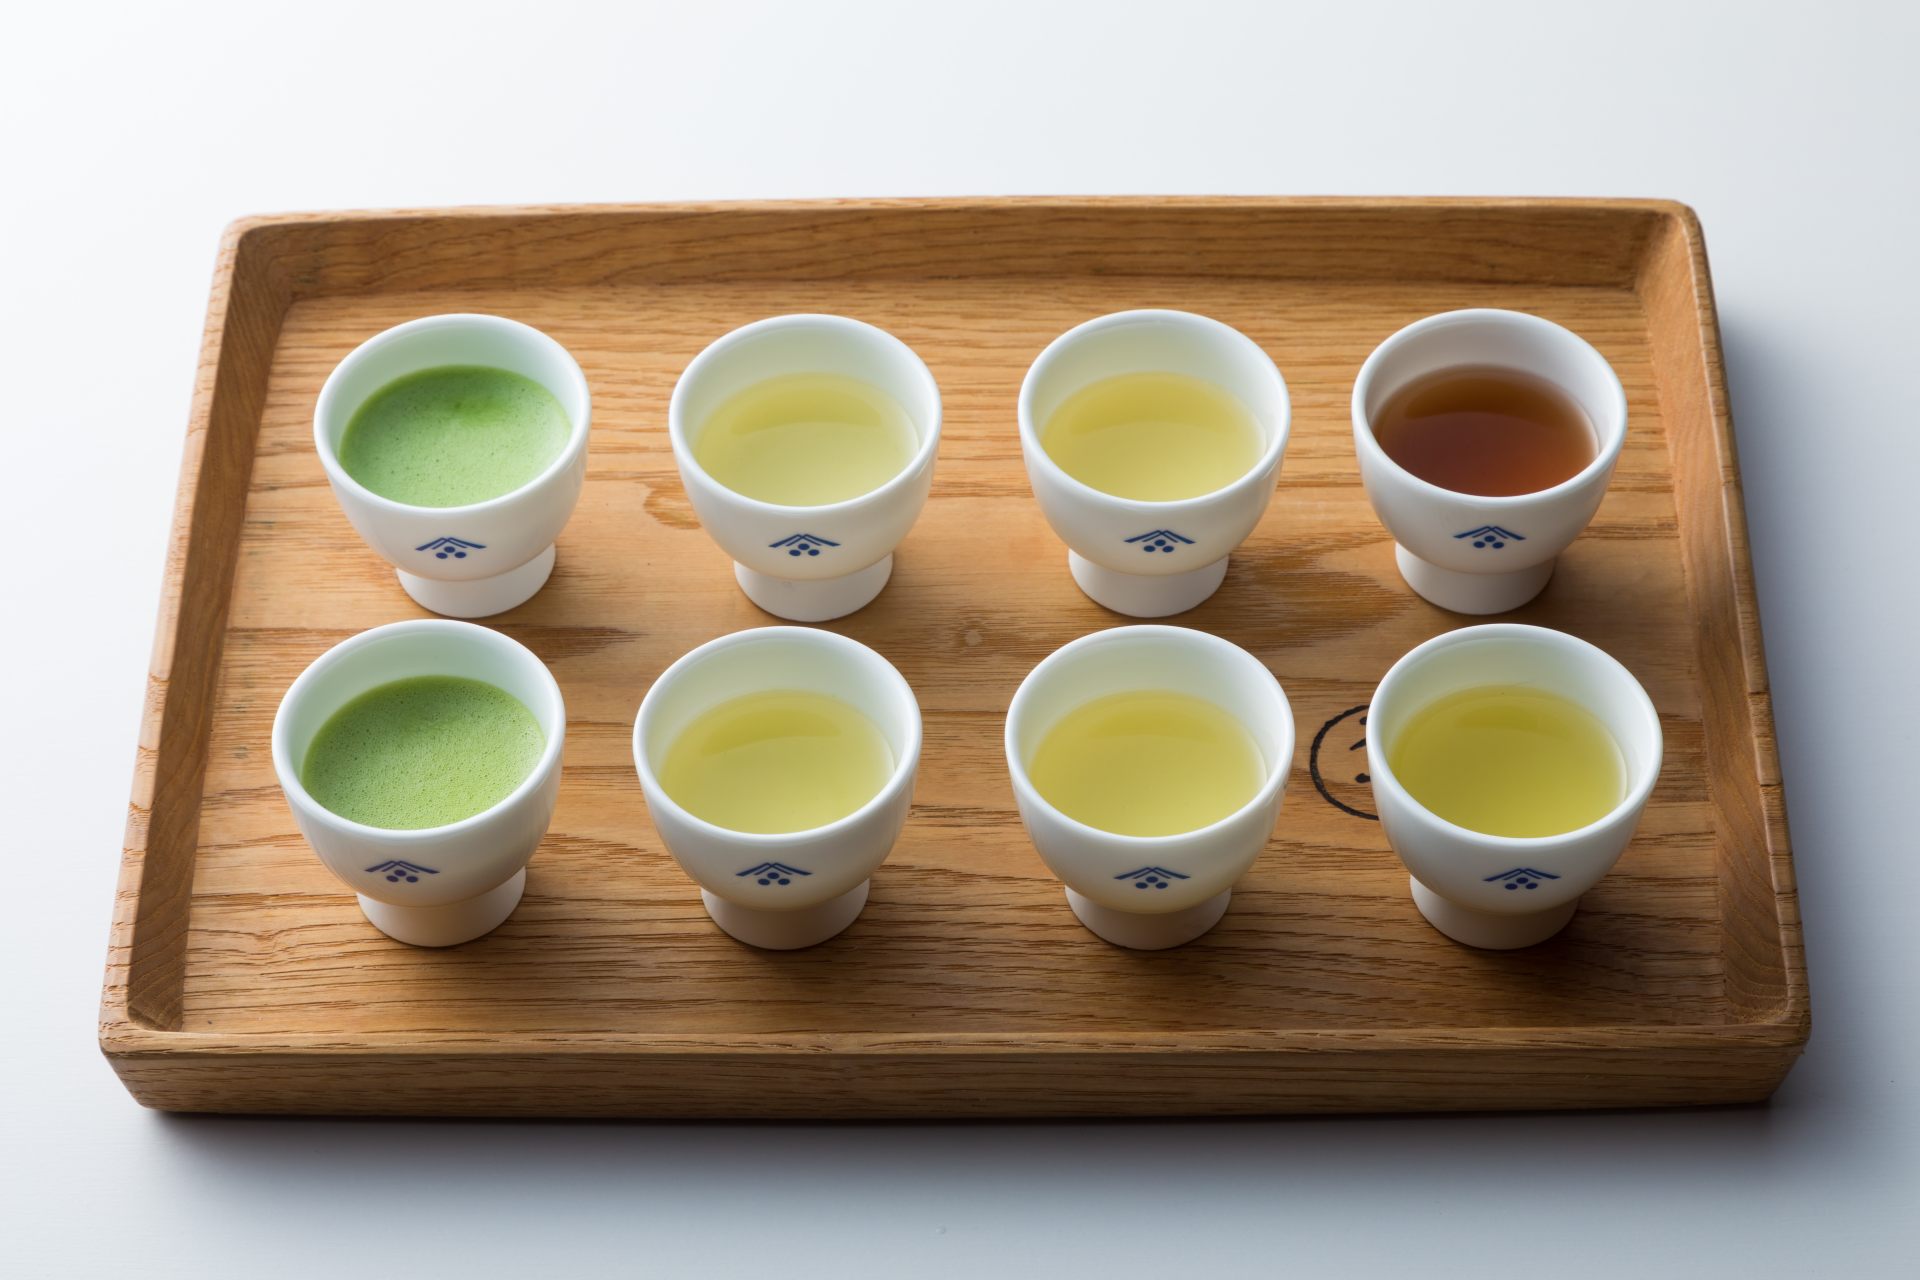 日本茶と一言で括っても、その味わいや香りは実に多彩